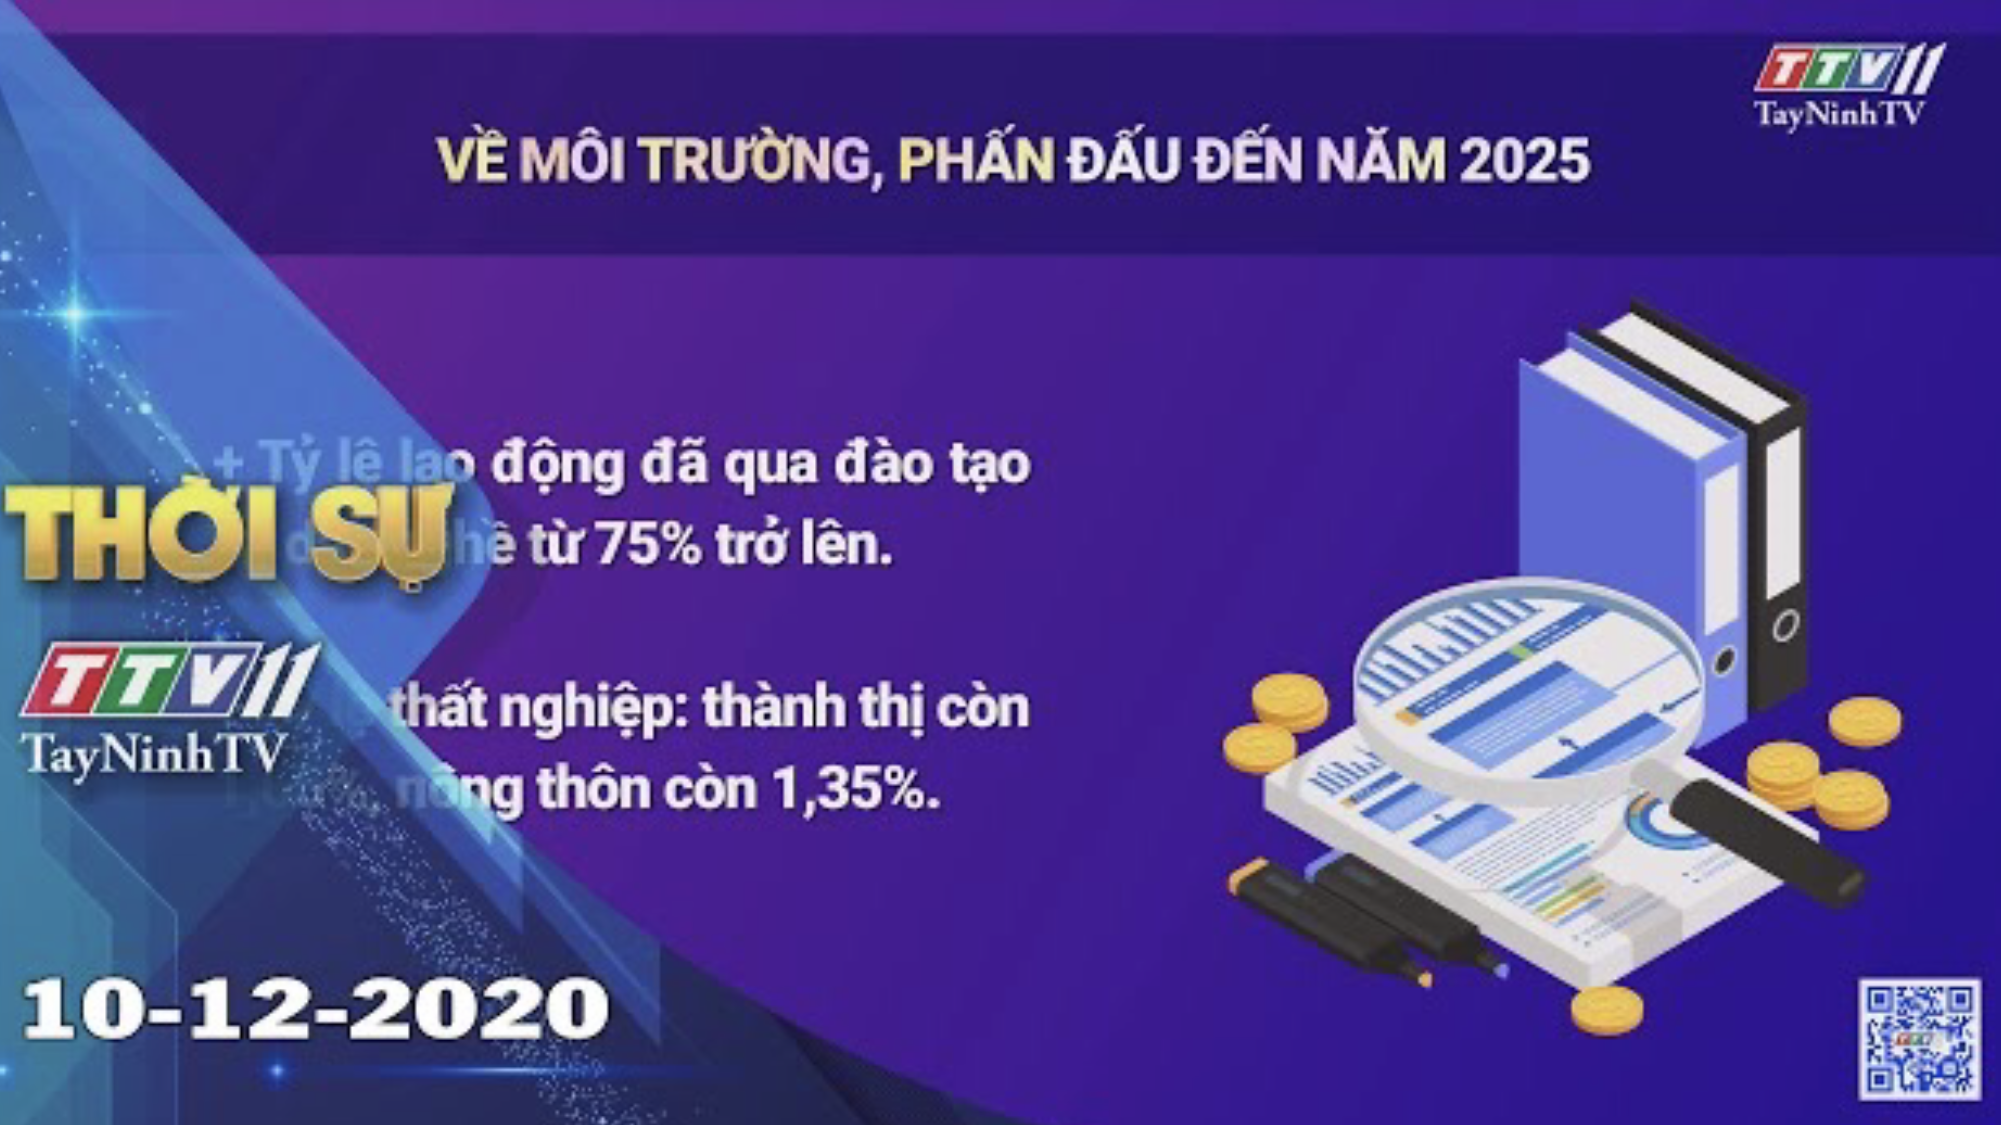 Thời sự Tây Ninh 10-12-2020 | Tin tức hôm nay | TayNinhTV